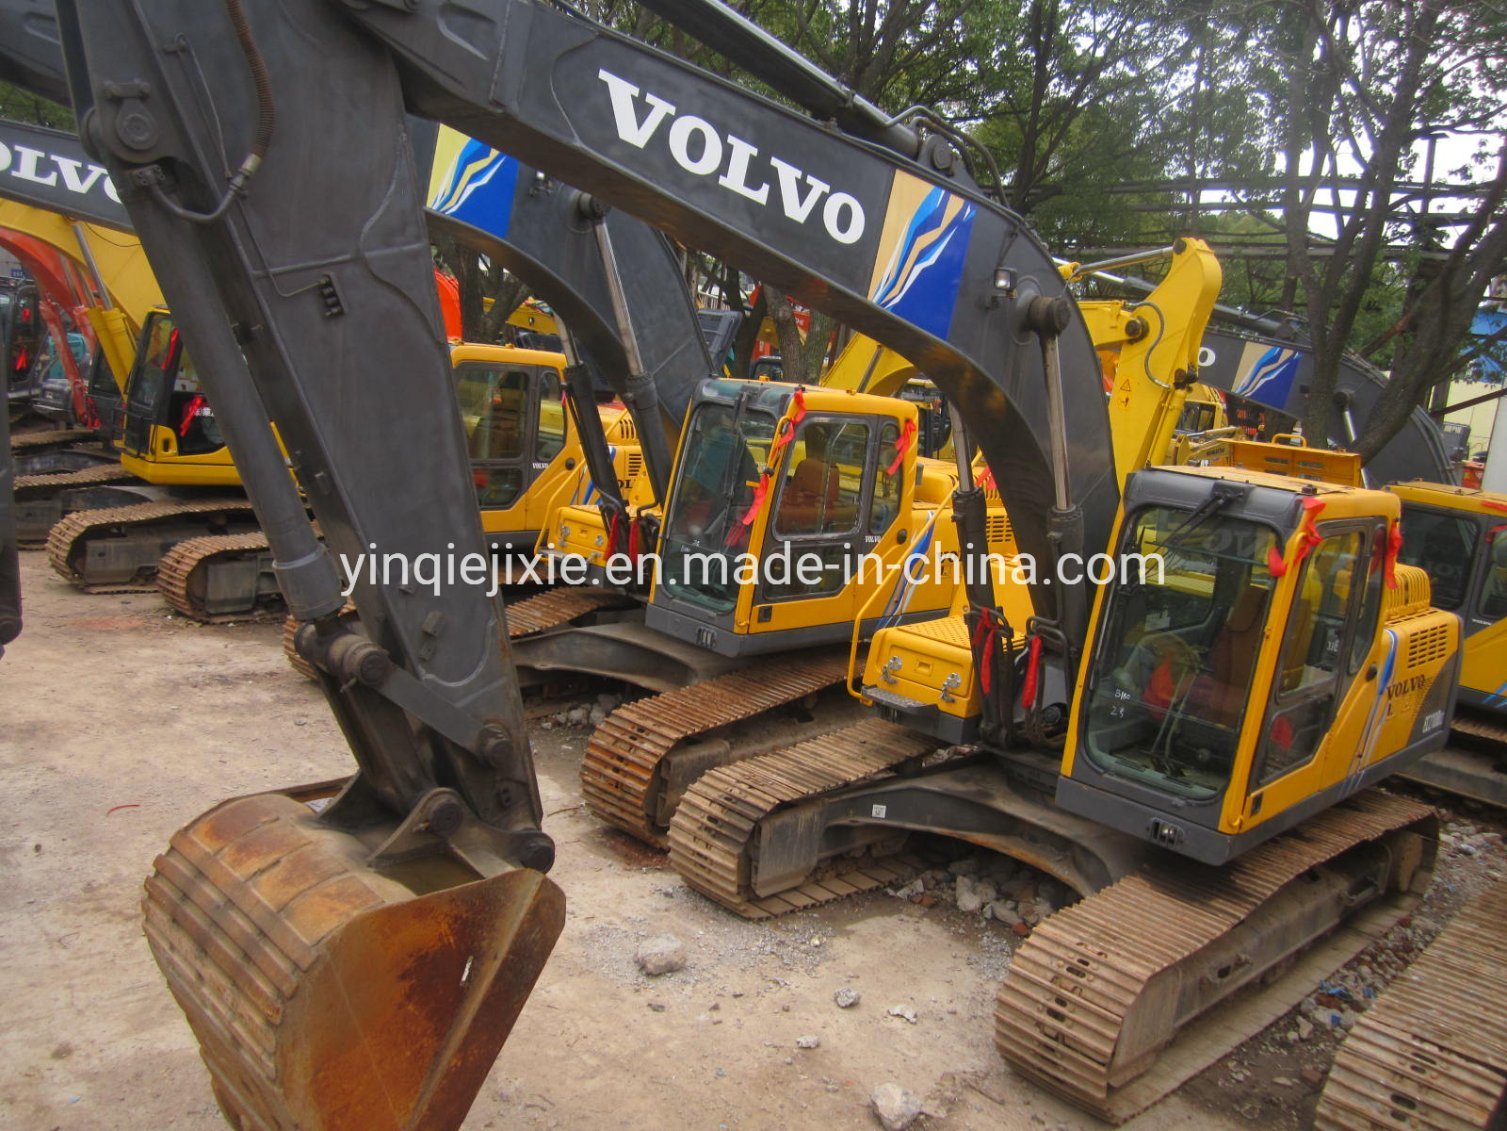 
                Excavadoras hidráulicas Volvo 240 se utiliza la excavadora Volvo 20t Volvo ce240blc excavadora de cadenas de venta
            